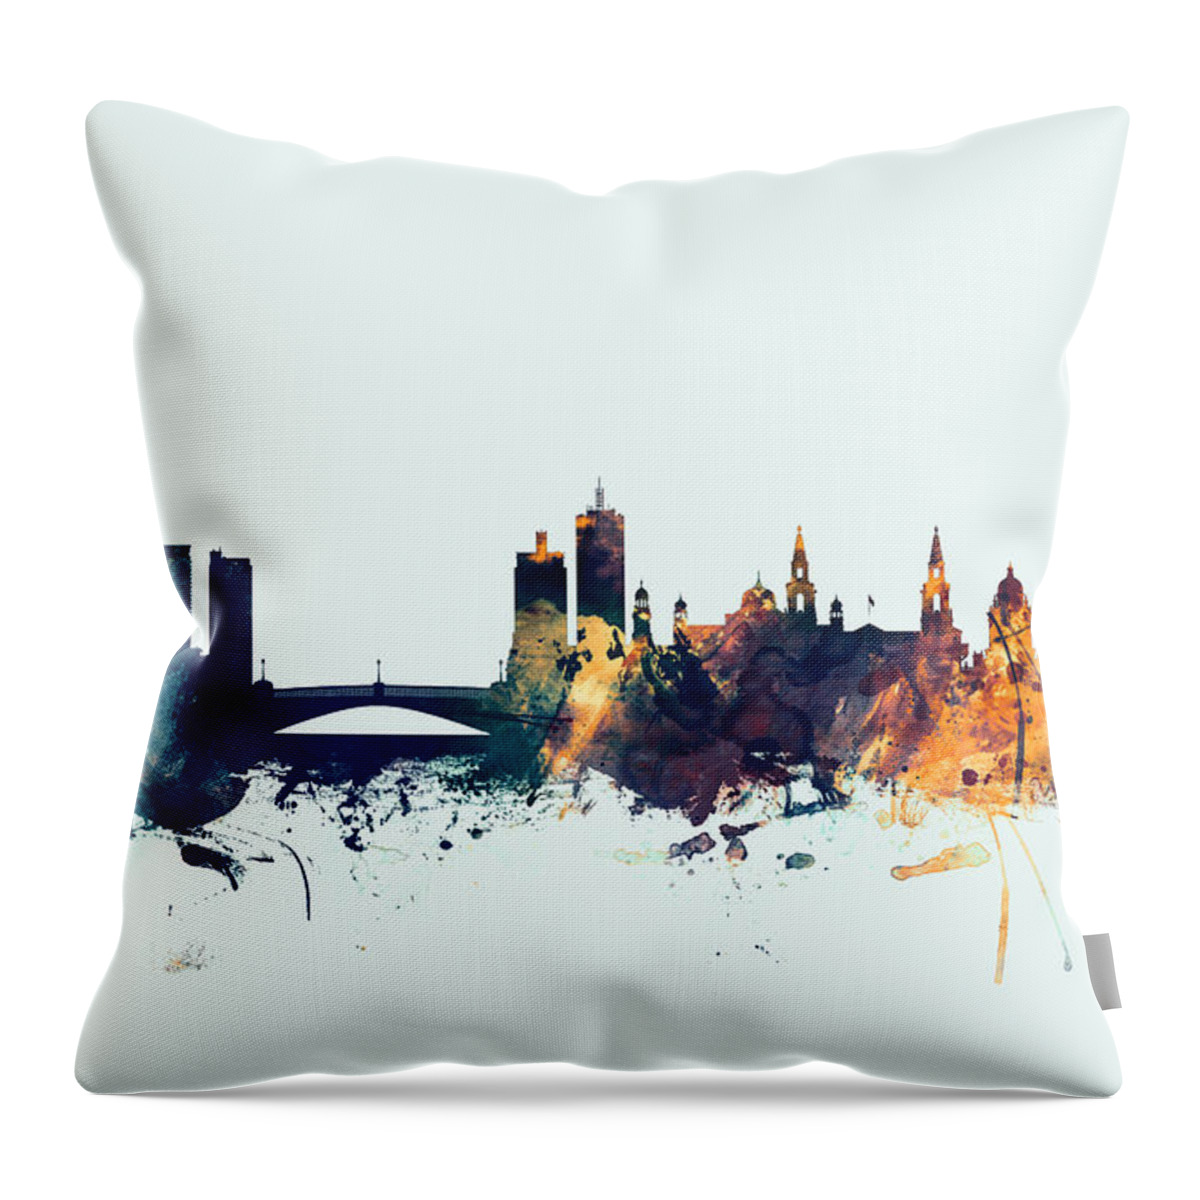 City Throw Pillow featuring the digital art Leeds England Skyline by Michael Tompsett